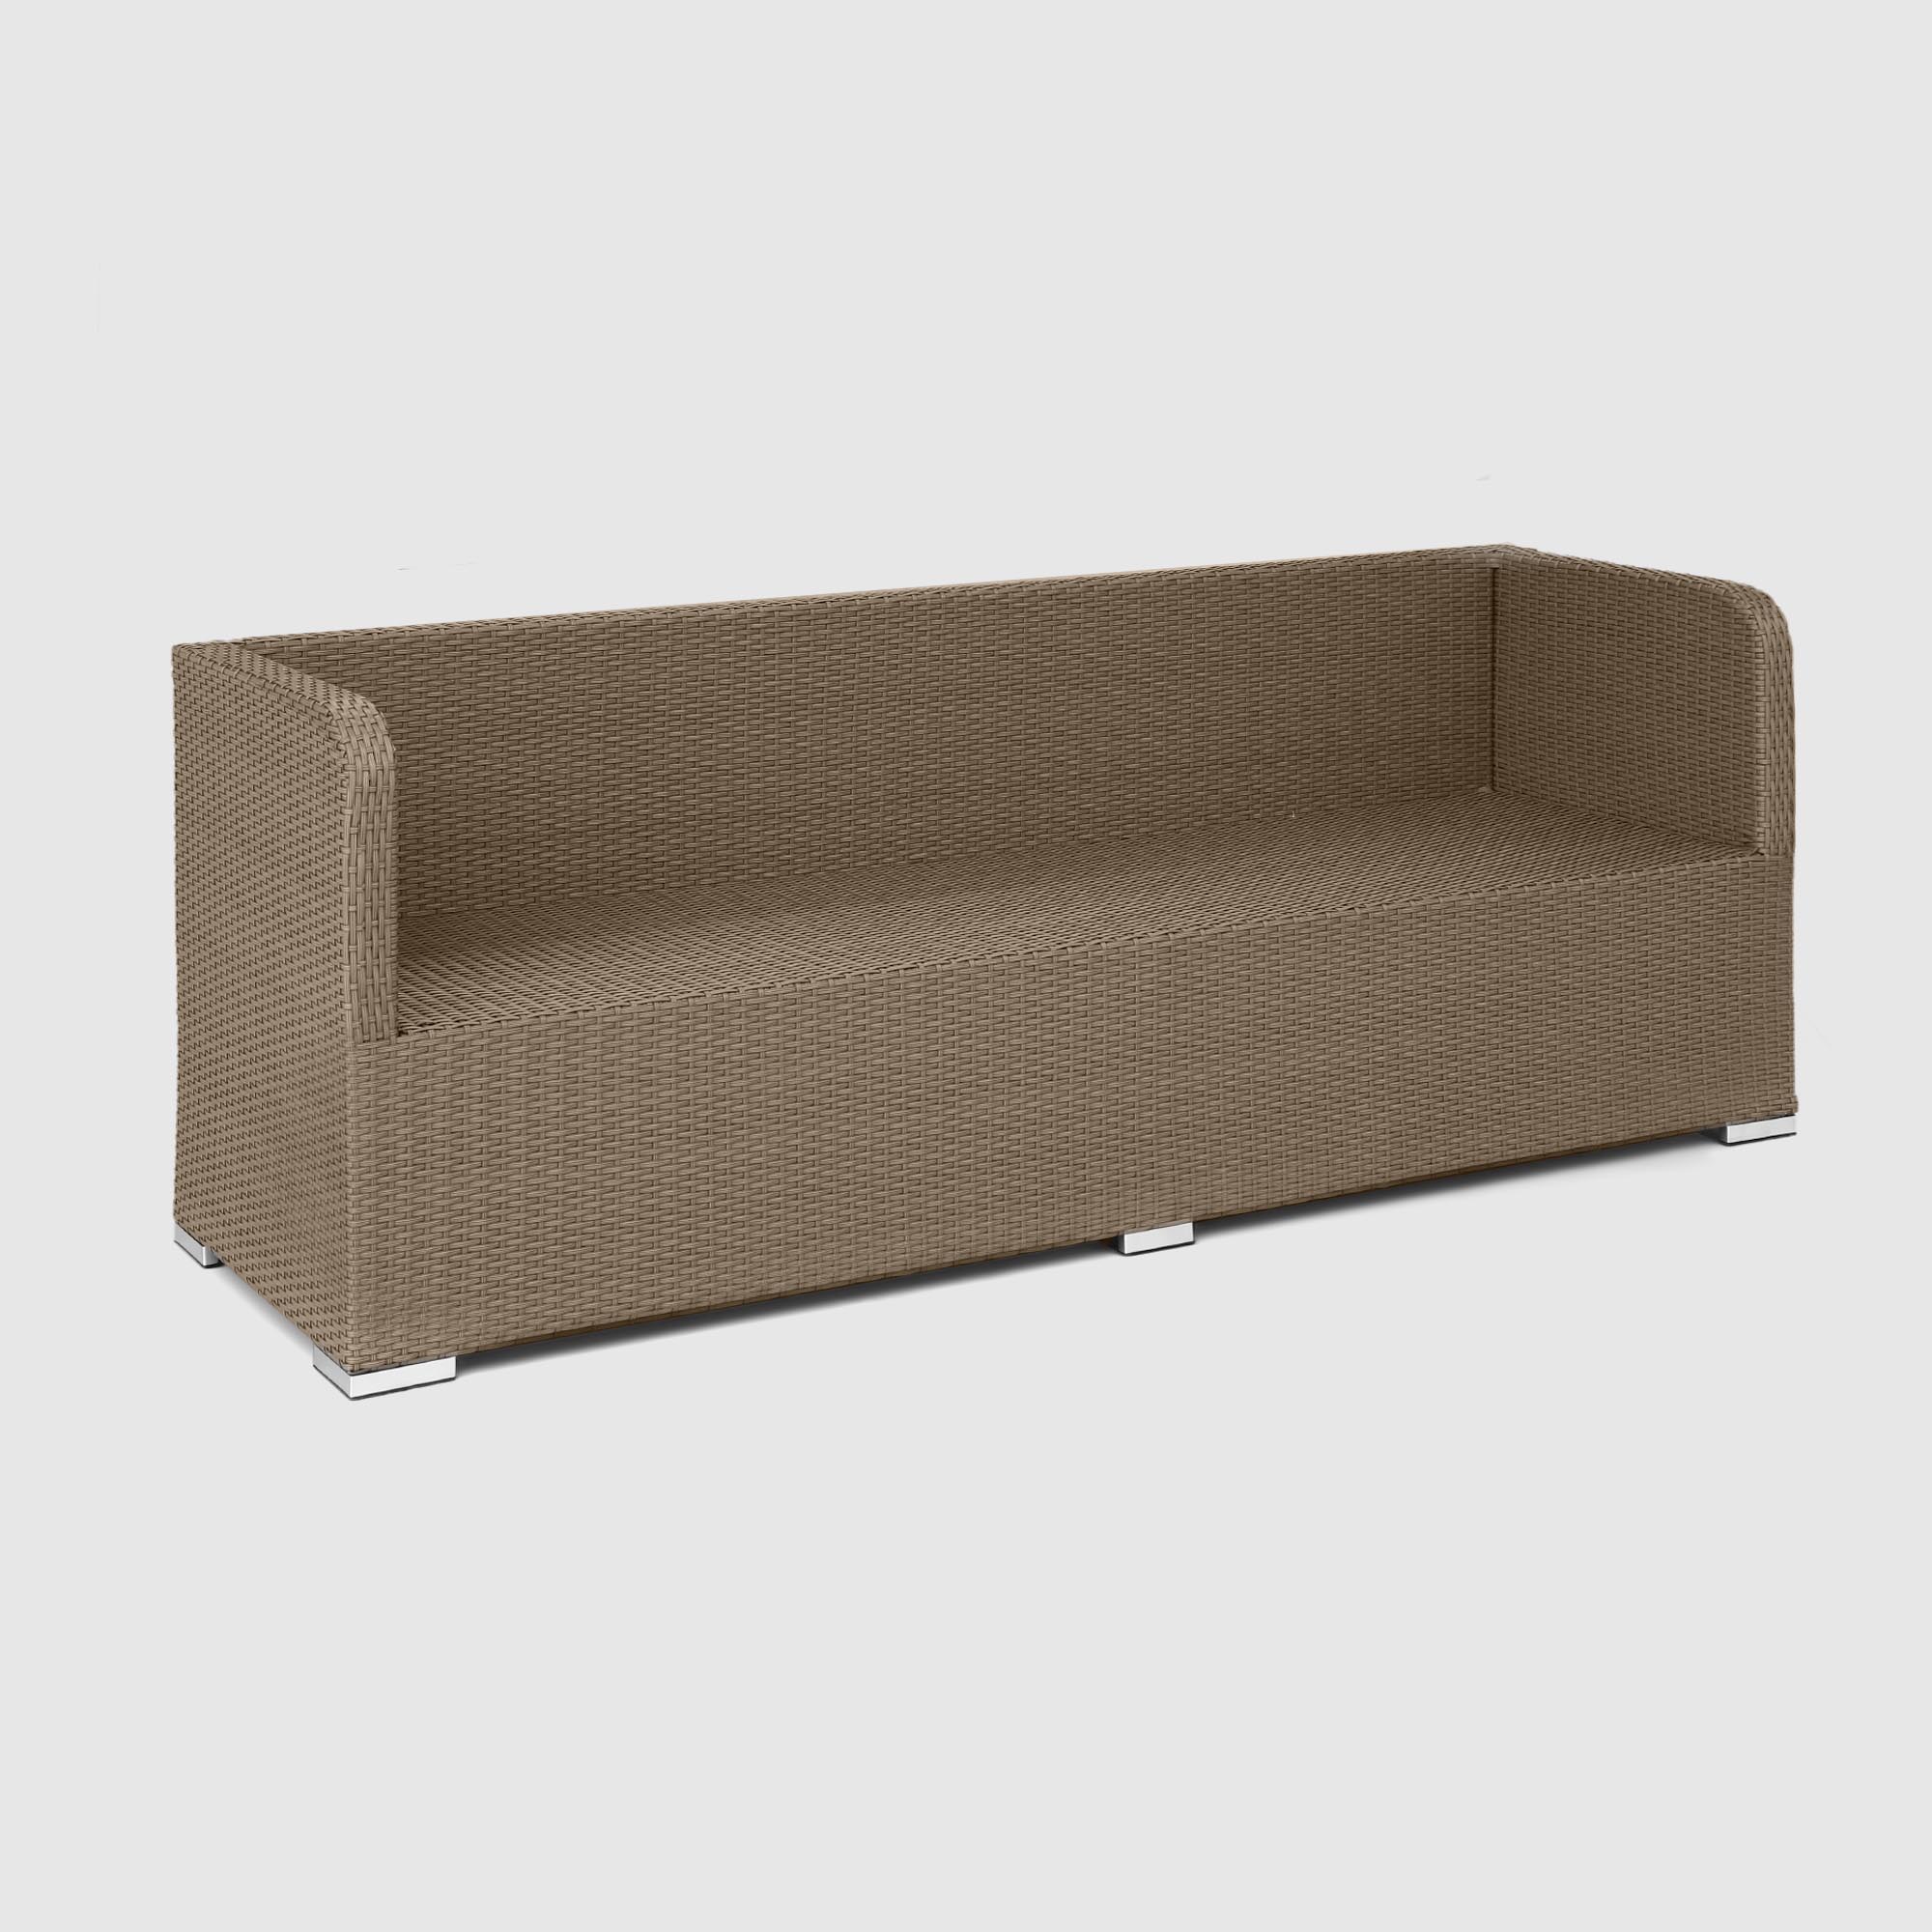 Комплект мебели NS Rattan LWS 21 коричневый с серым 3 предмета, цвет светло-коричневый, размер 220х75х75 - фото 8